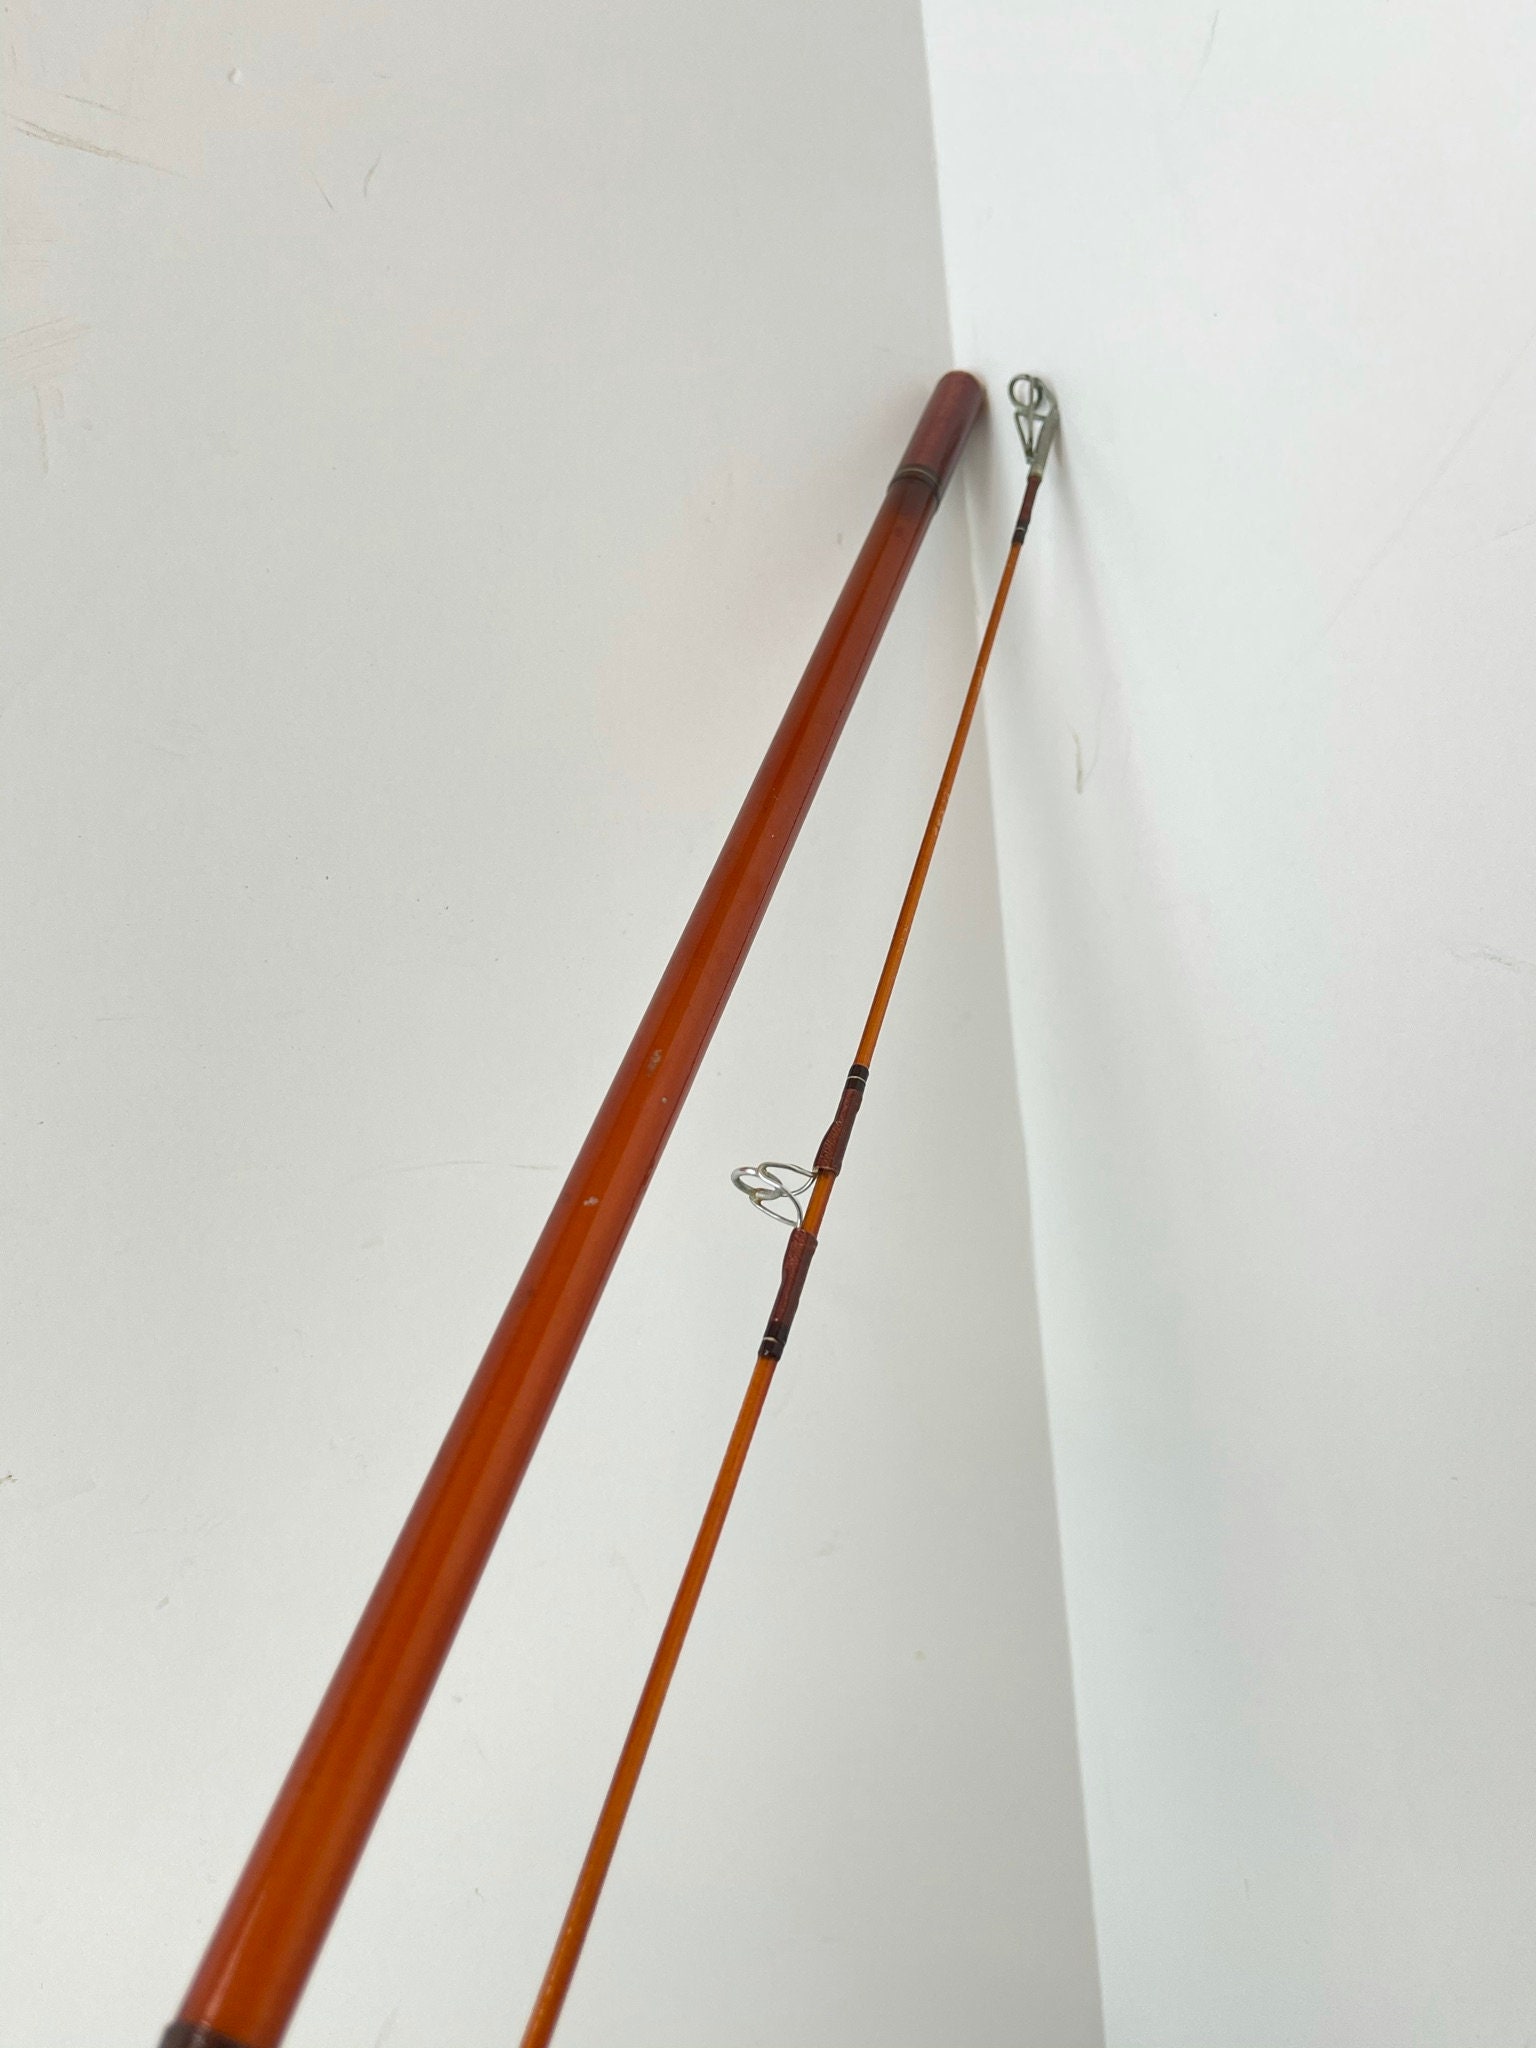 Vintage Daiwa Diamond Fishing Rod, Hard Case Fishing Rod Holder